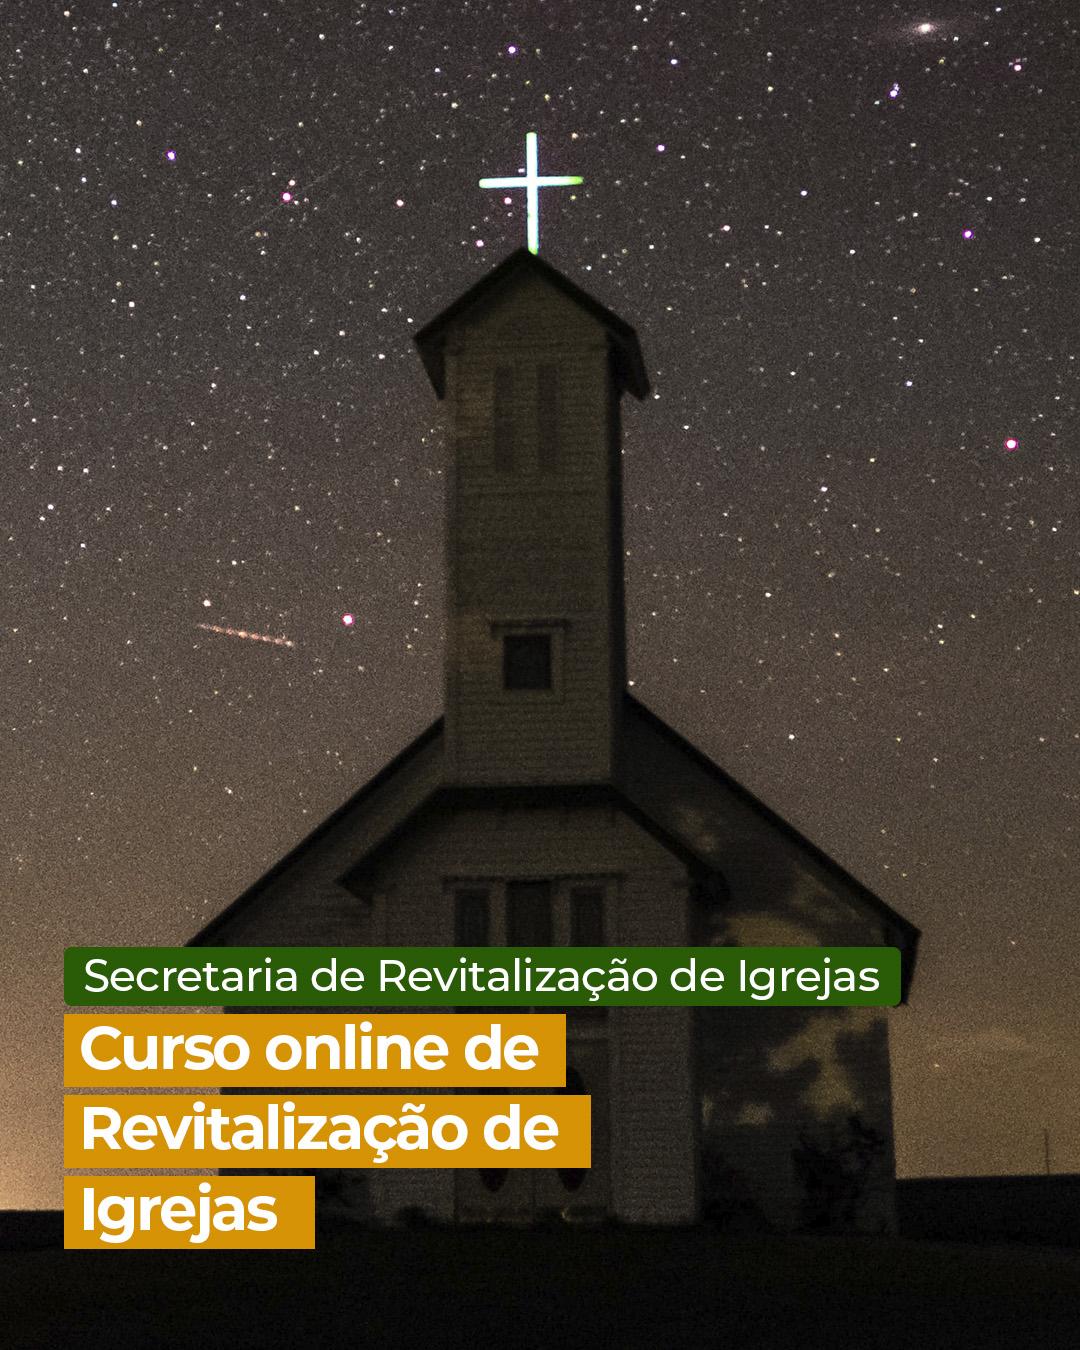 Curso online de revitalização de igrejas